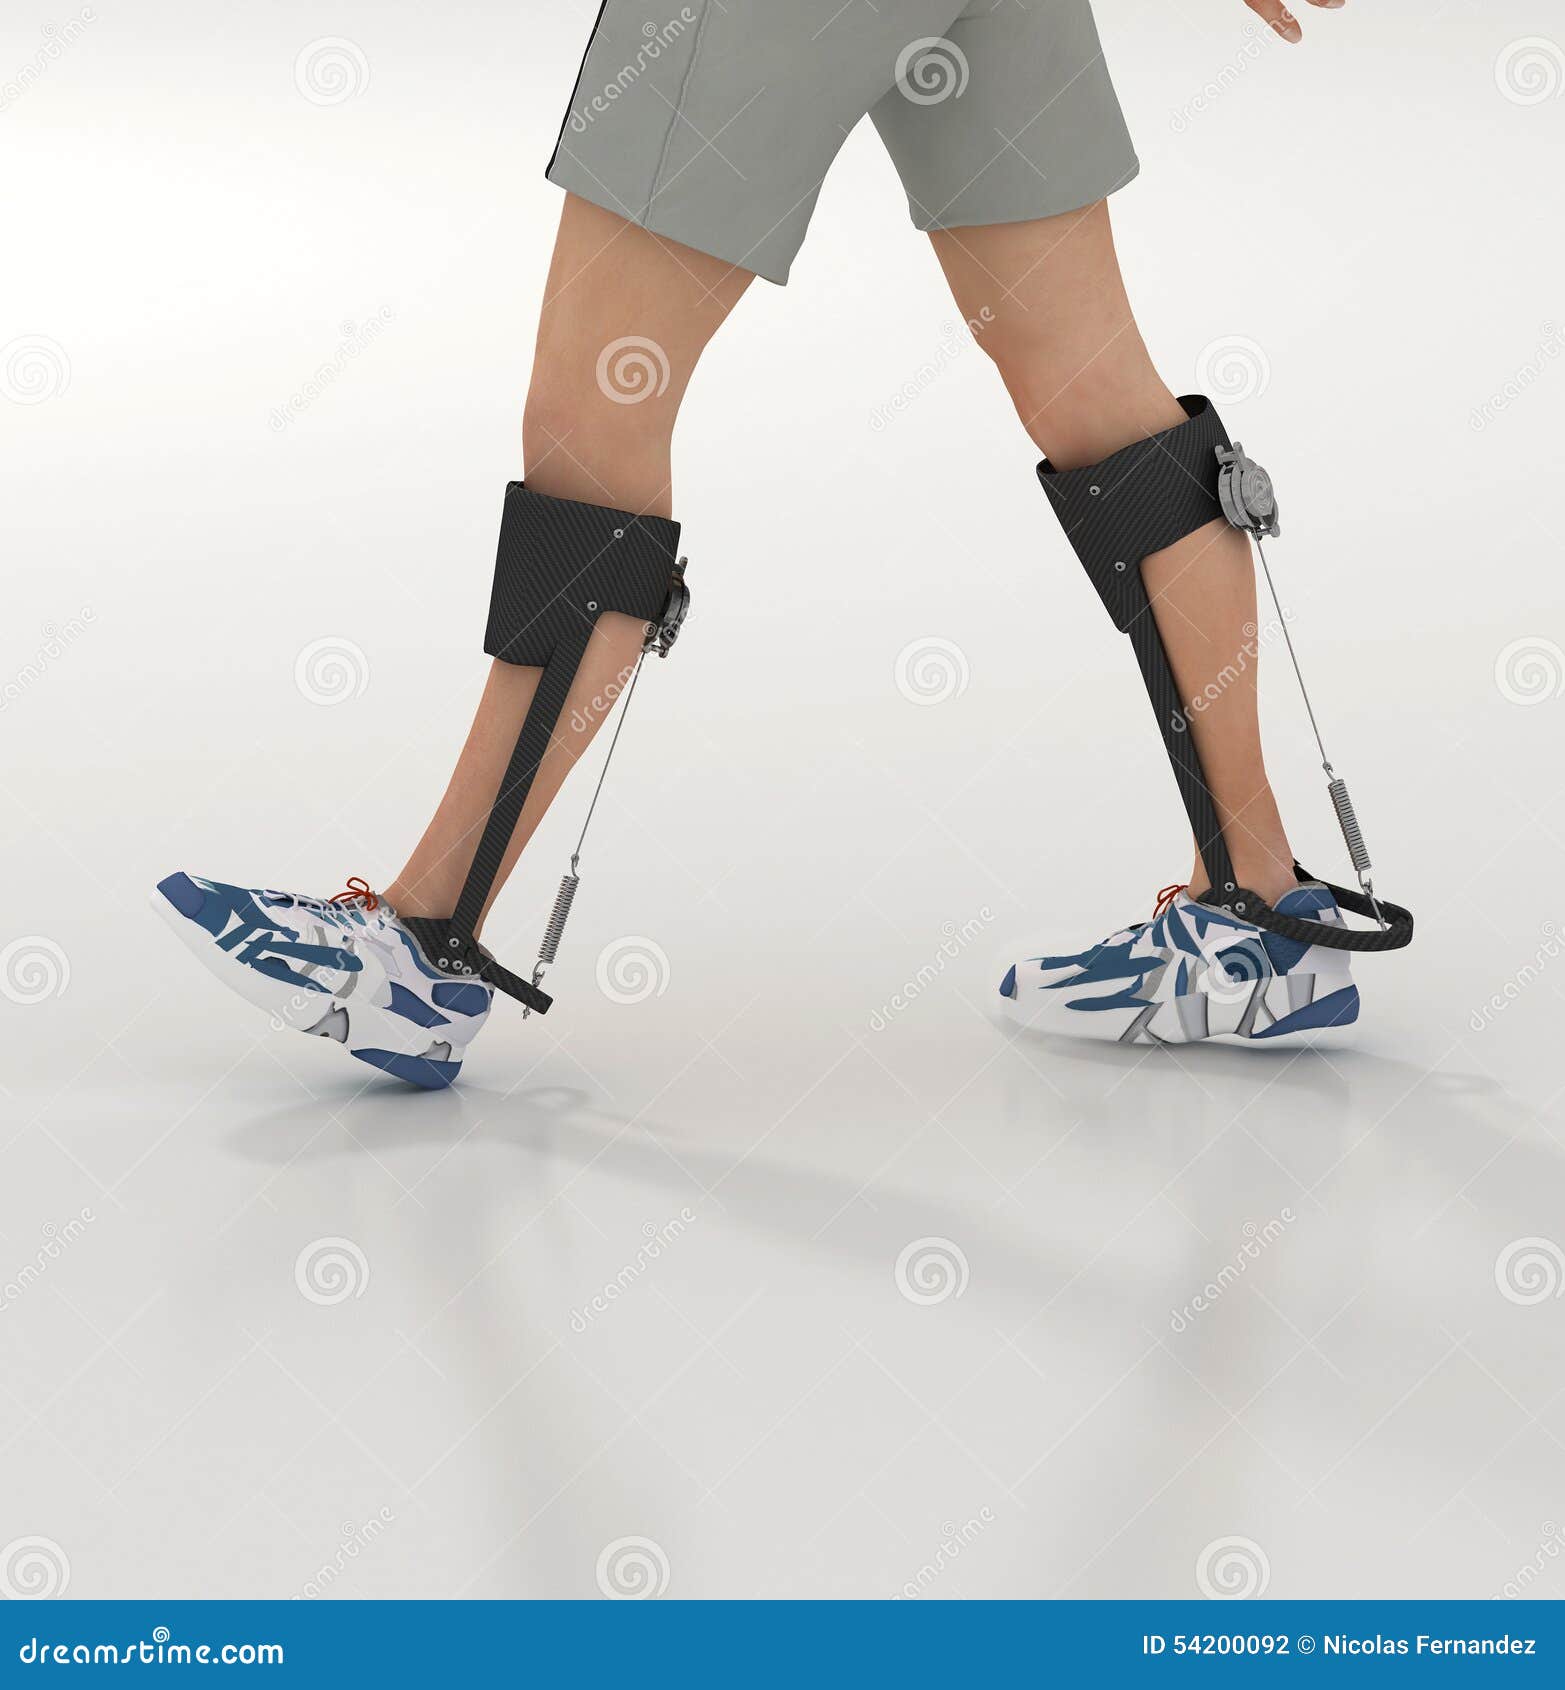 human exoskeleton